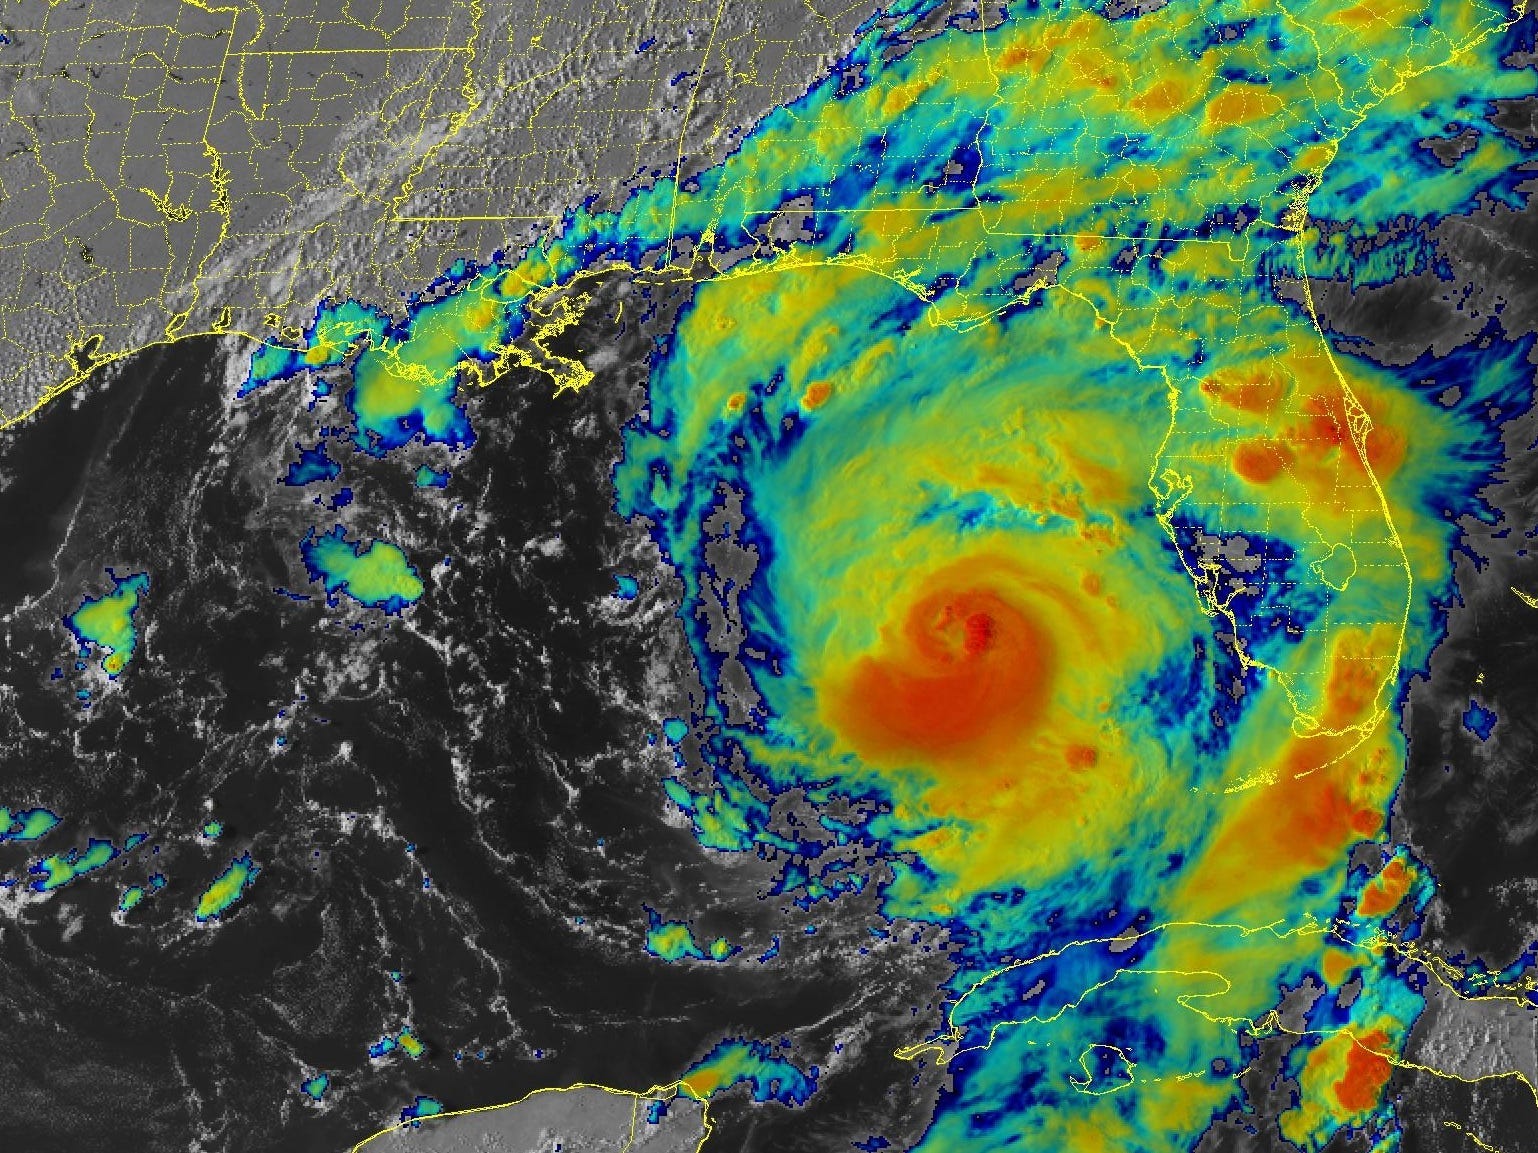 Infrarot-Satellitenbild zeigt Hurrikan-Zyklon nördlich von Kuba in der Nähe von Florida mit einem roten Kern und gelbgrünen Außenbändern